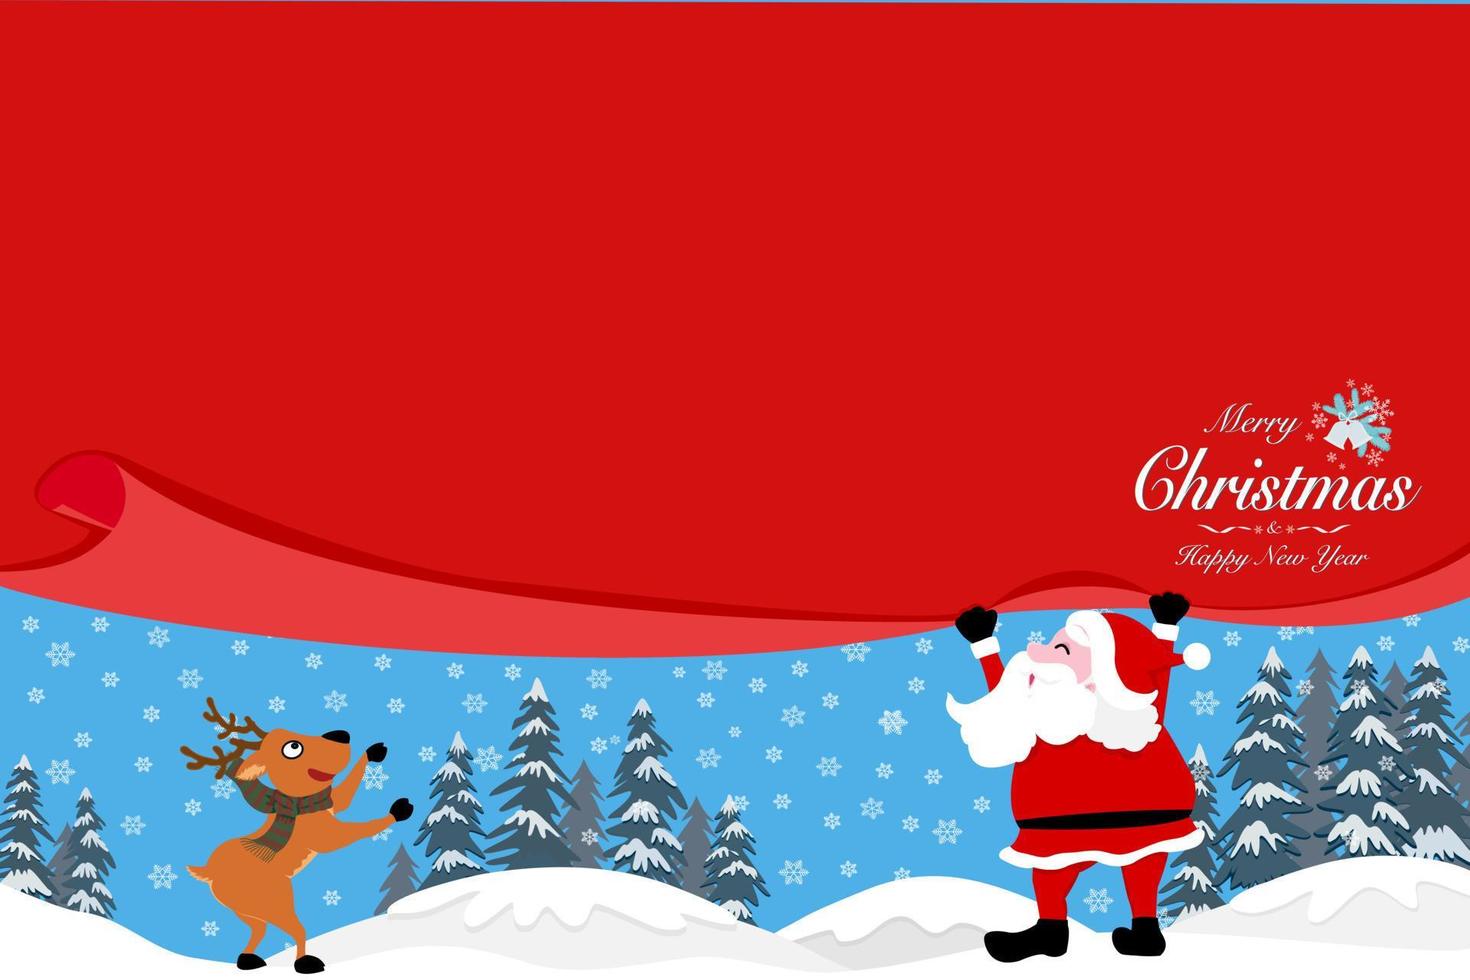 weihnachtsmann zieht roten vorhang mit kopierraum, texte frohe weihnachten und guten rutsch ins neue jahr an der ecke rentiere, kiefern und schneeflocken in winterlandschaft im hintergrund, vektorzeichnung für urlaub vektor